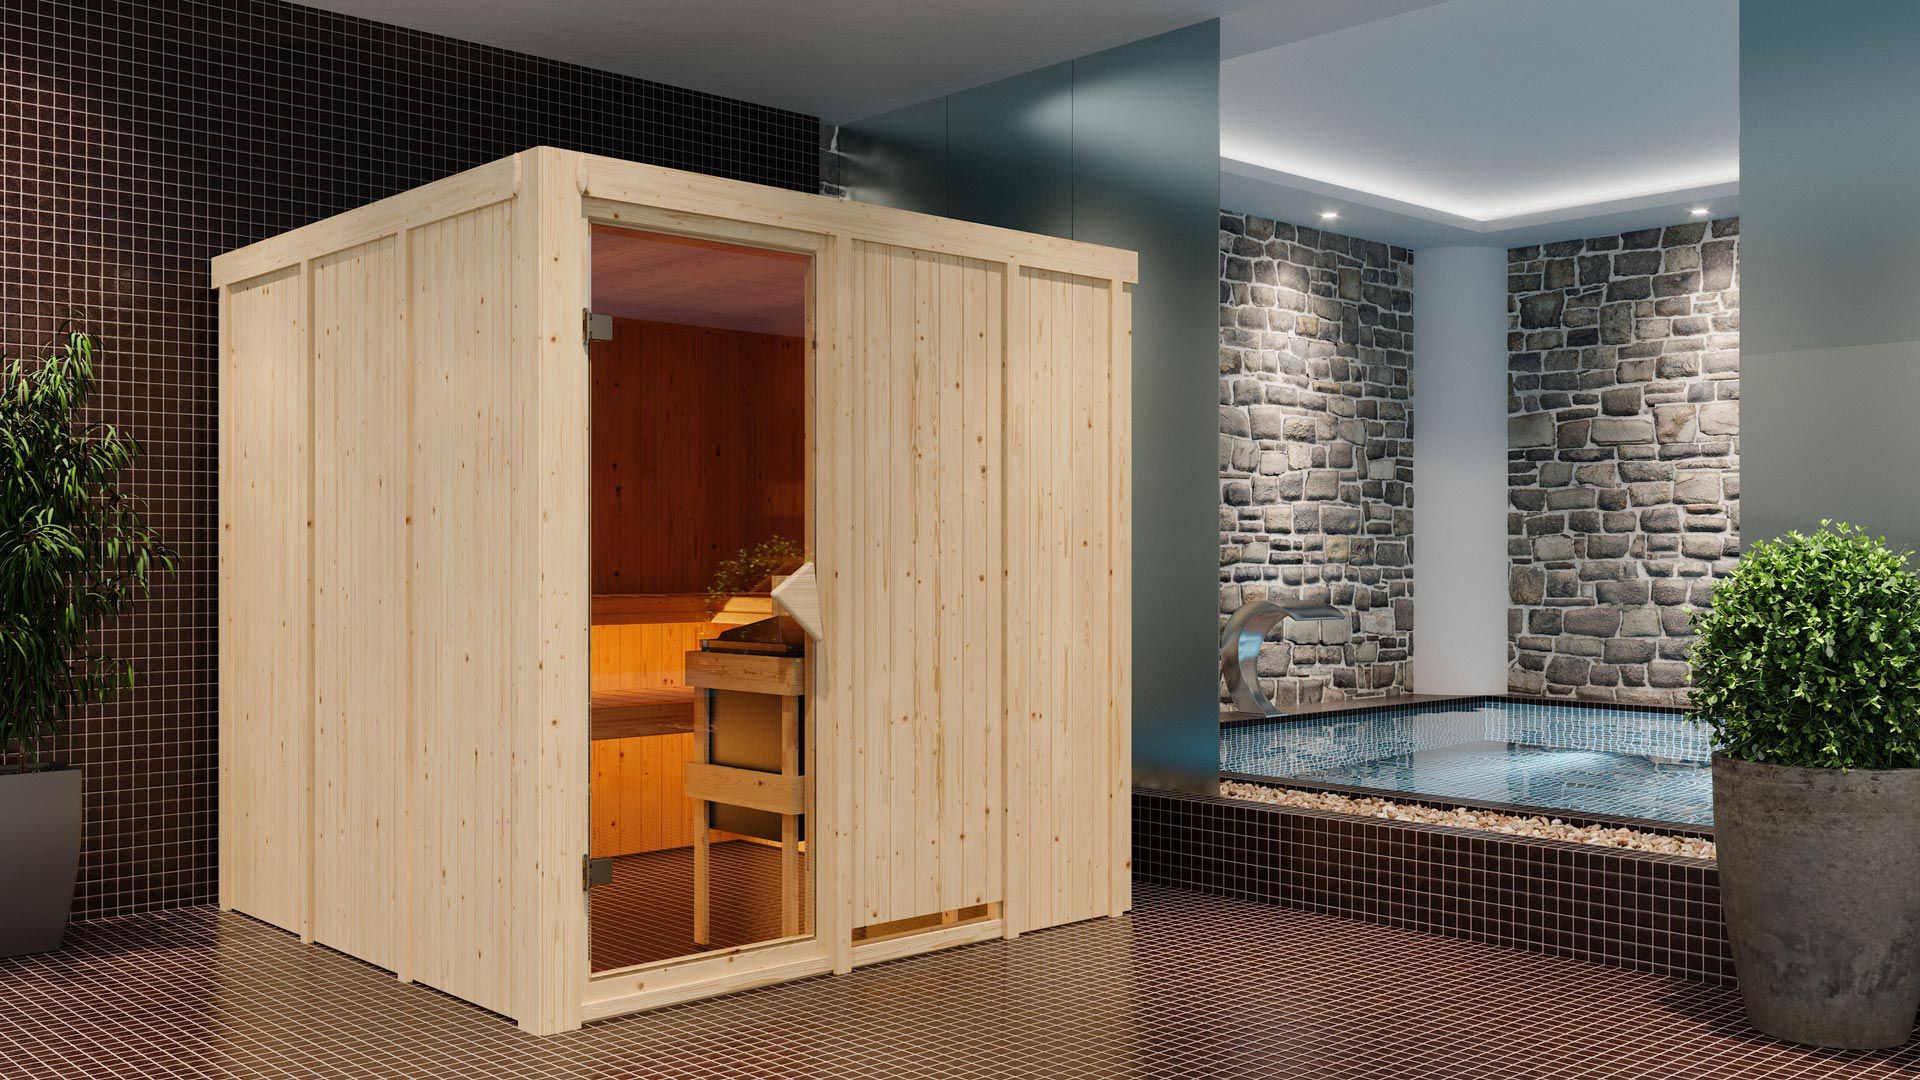 Sauna "Aleksi" mit bronzierter Tür - Farbe: Natur - 196 x 196 x 198 cm (B x T x H)